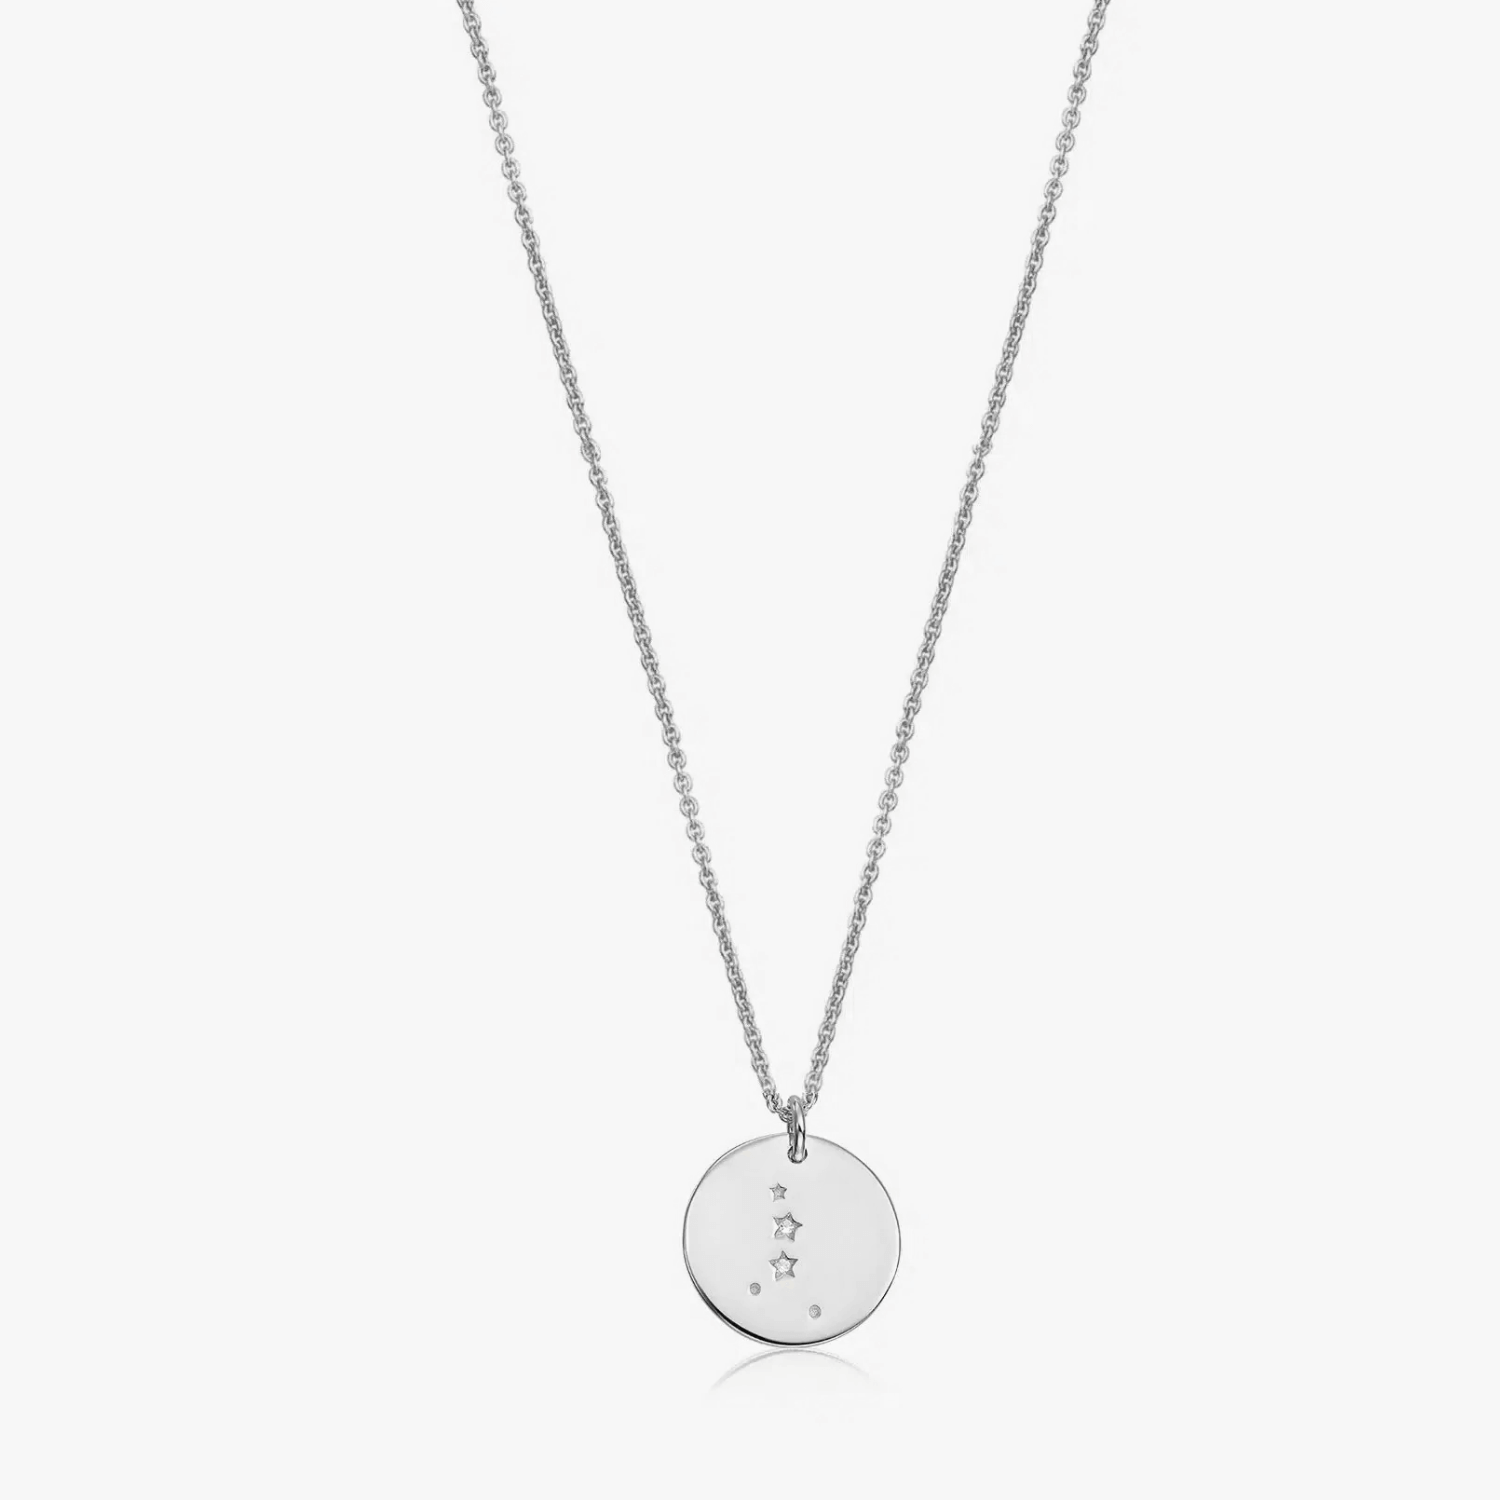 Silver Zodiac Silver Necklace - Cancer